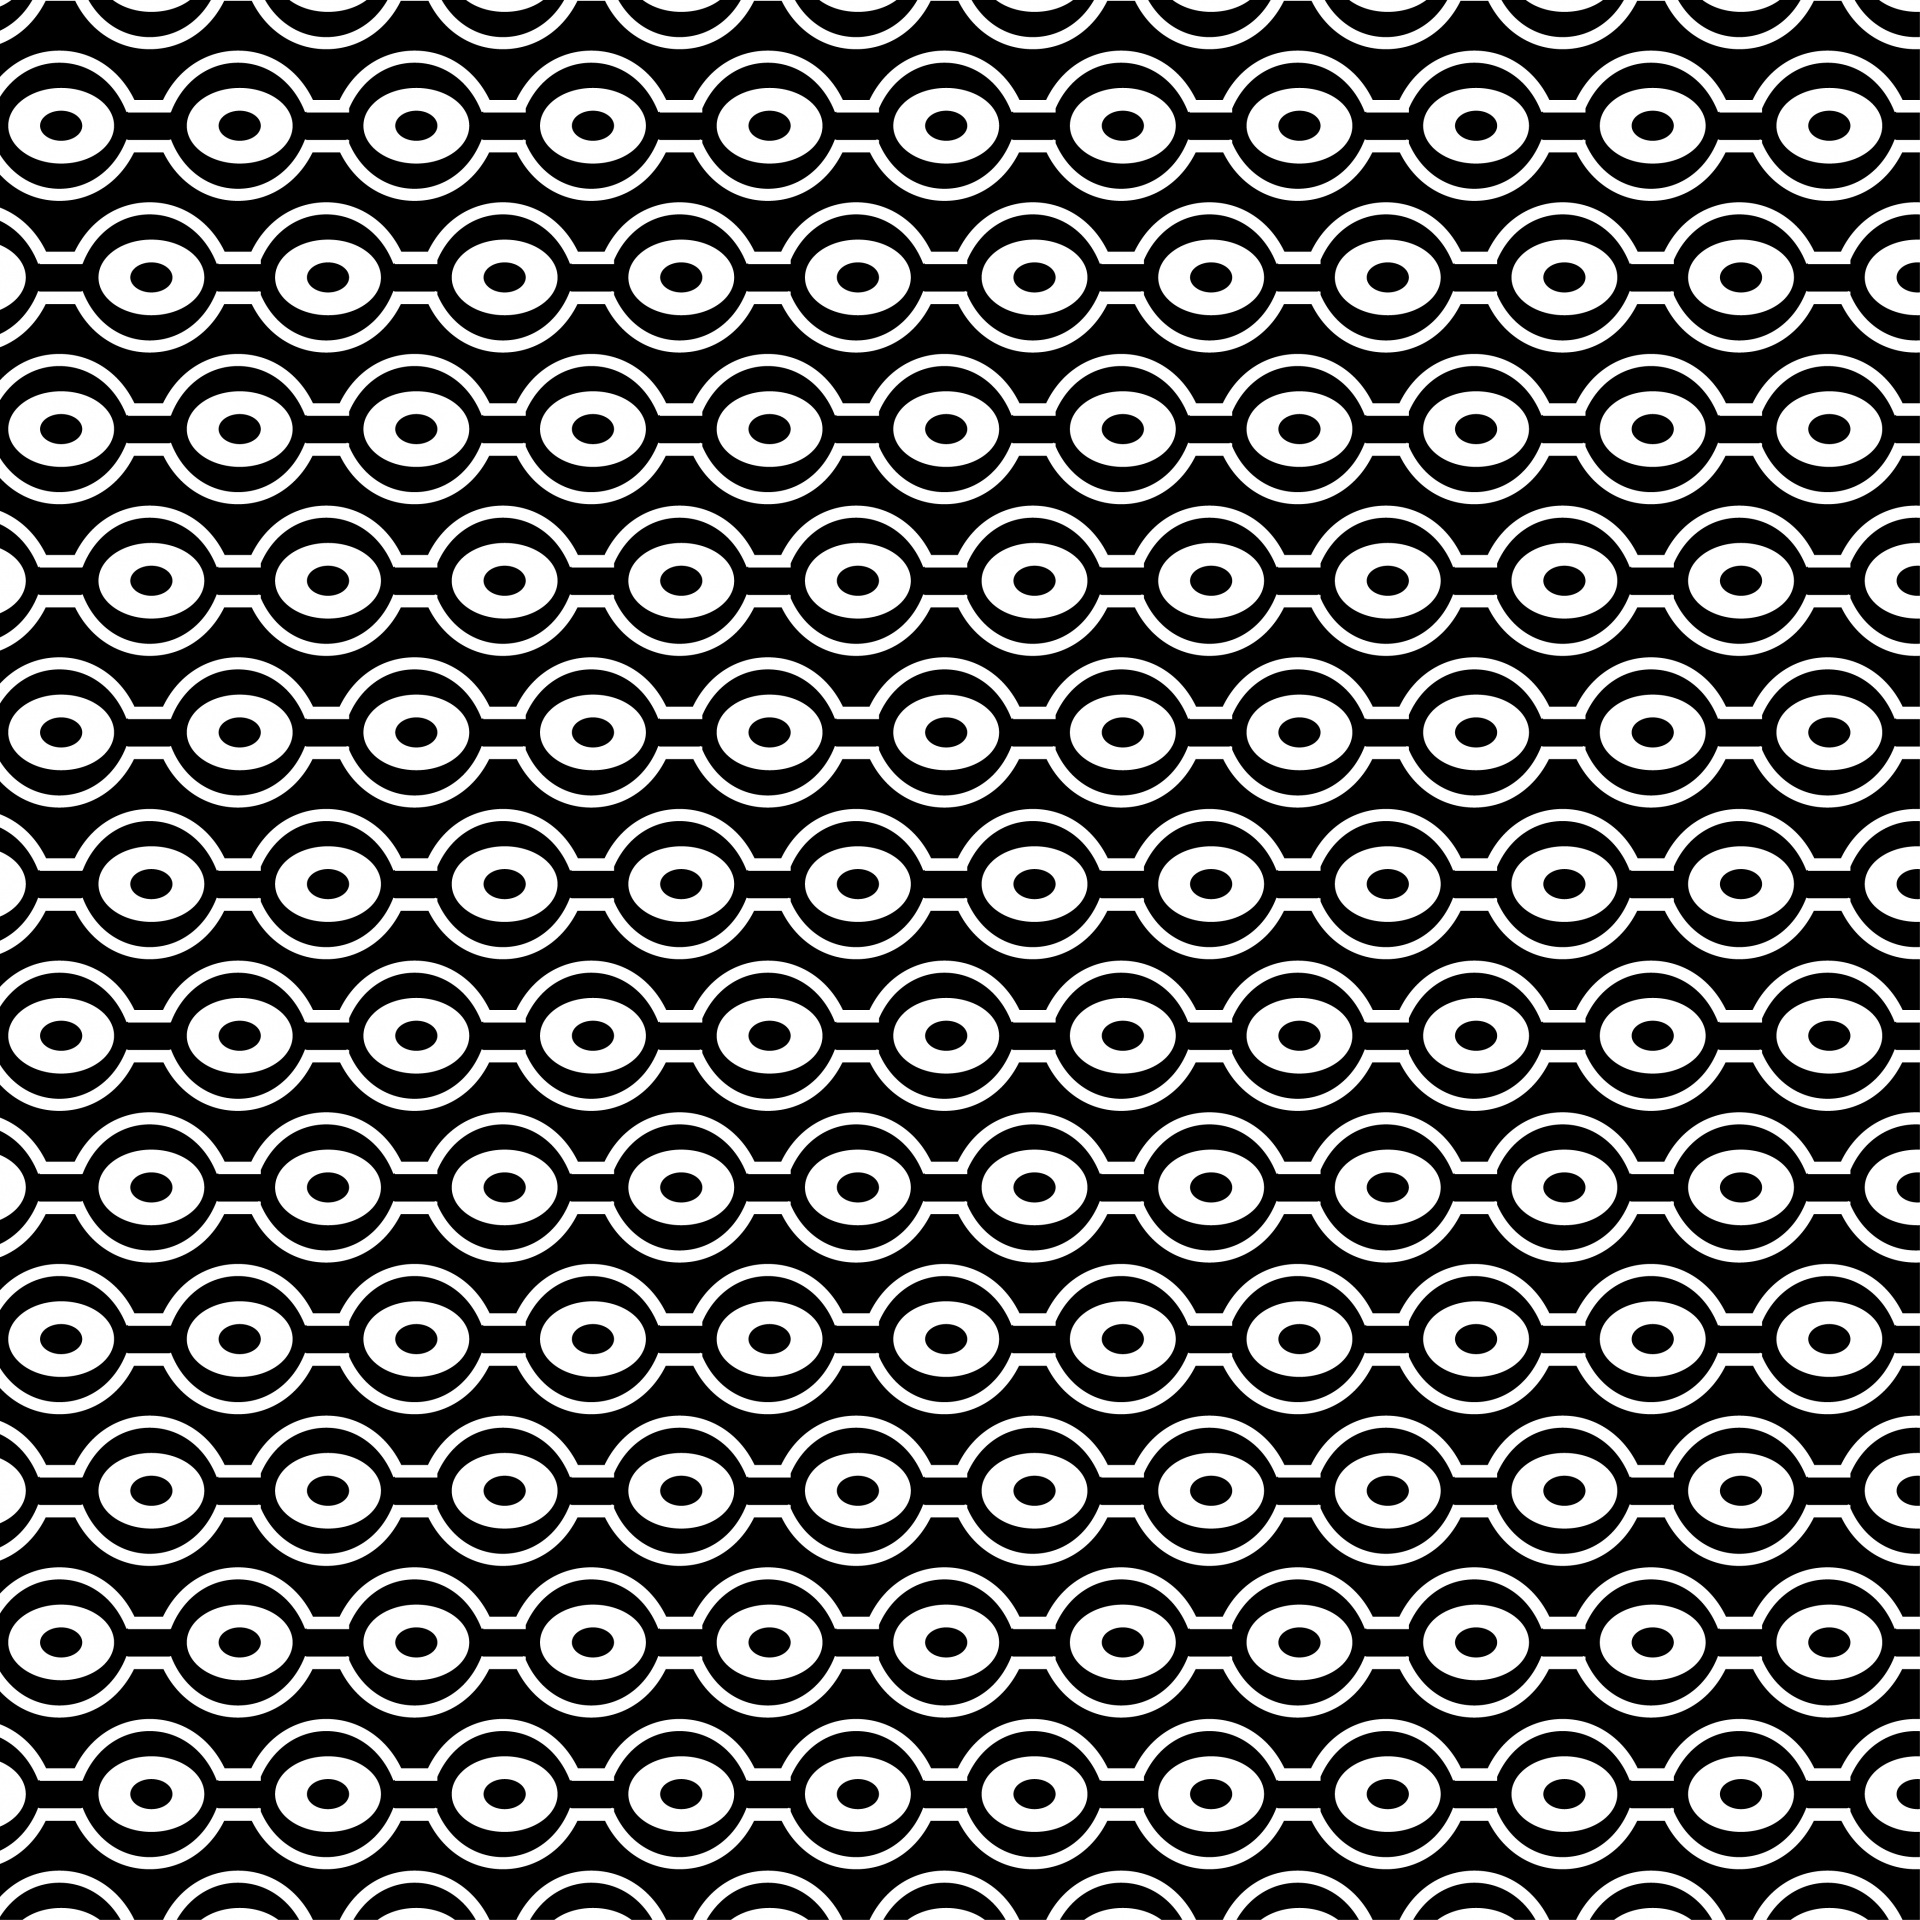 Círculos retro patrón de papel tapiz